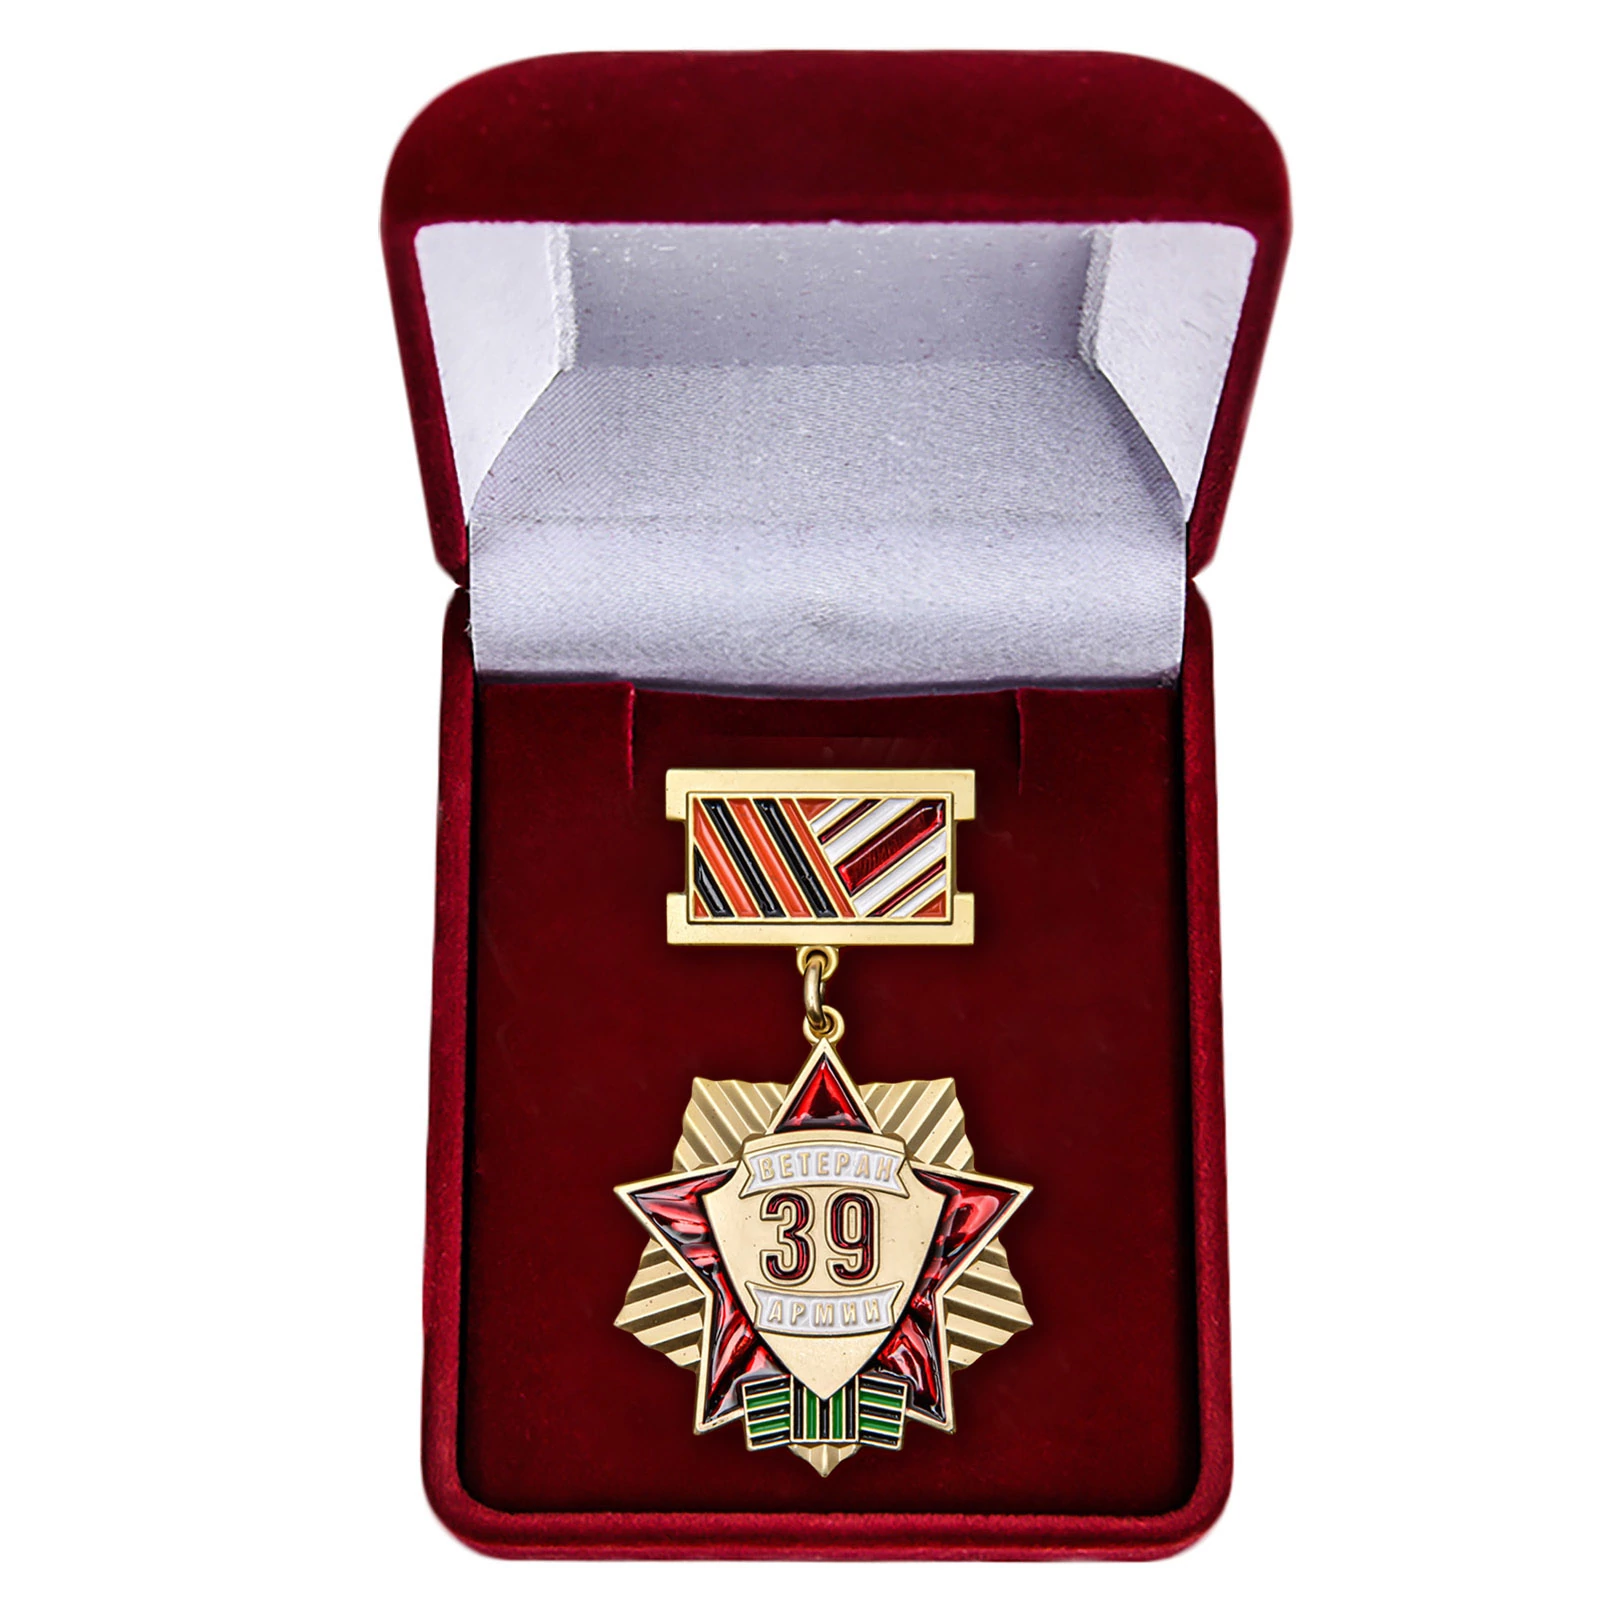 Сувенирная медаль "Ветеран 39 Армии"